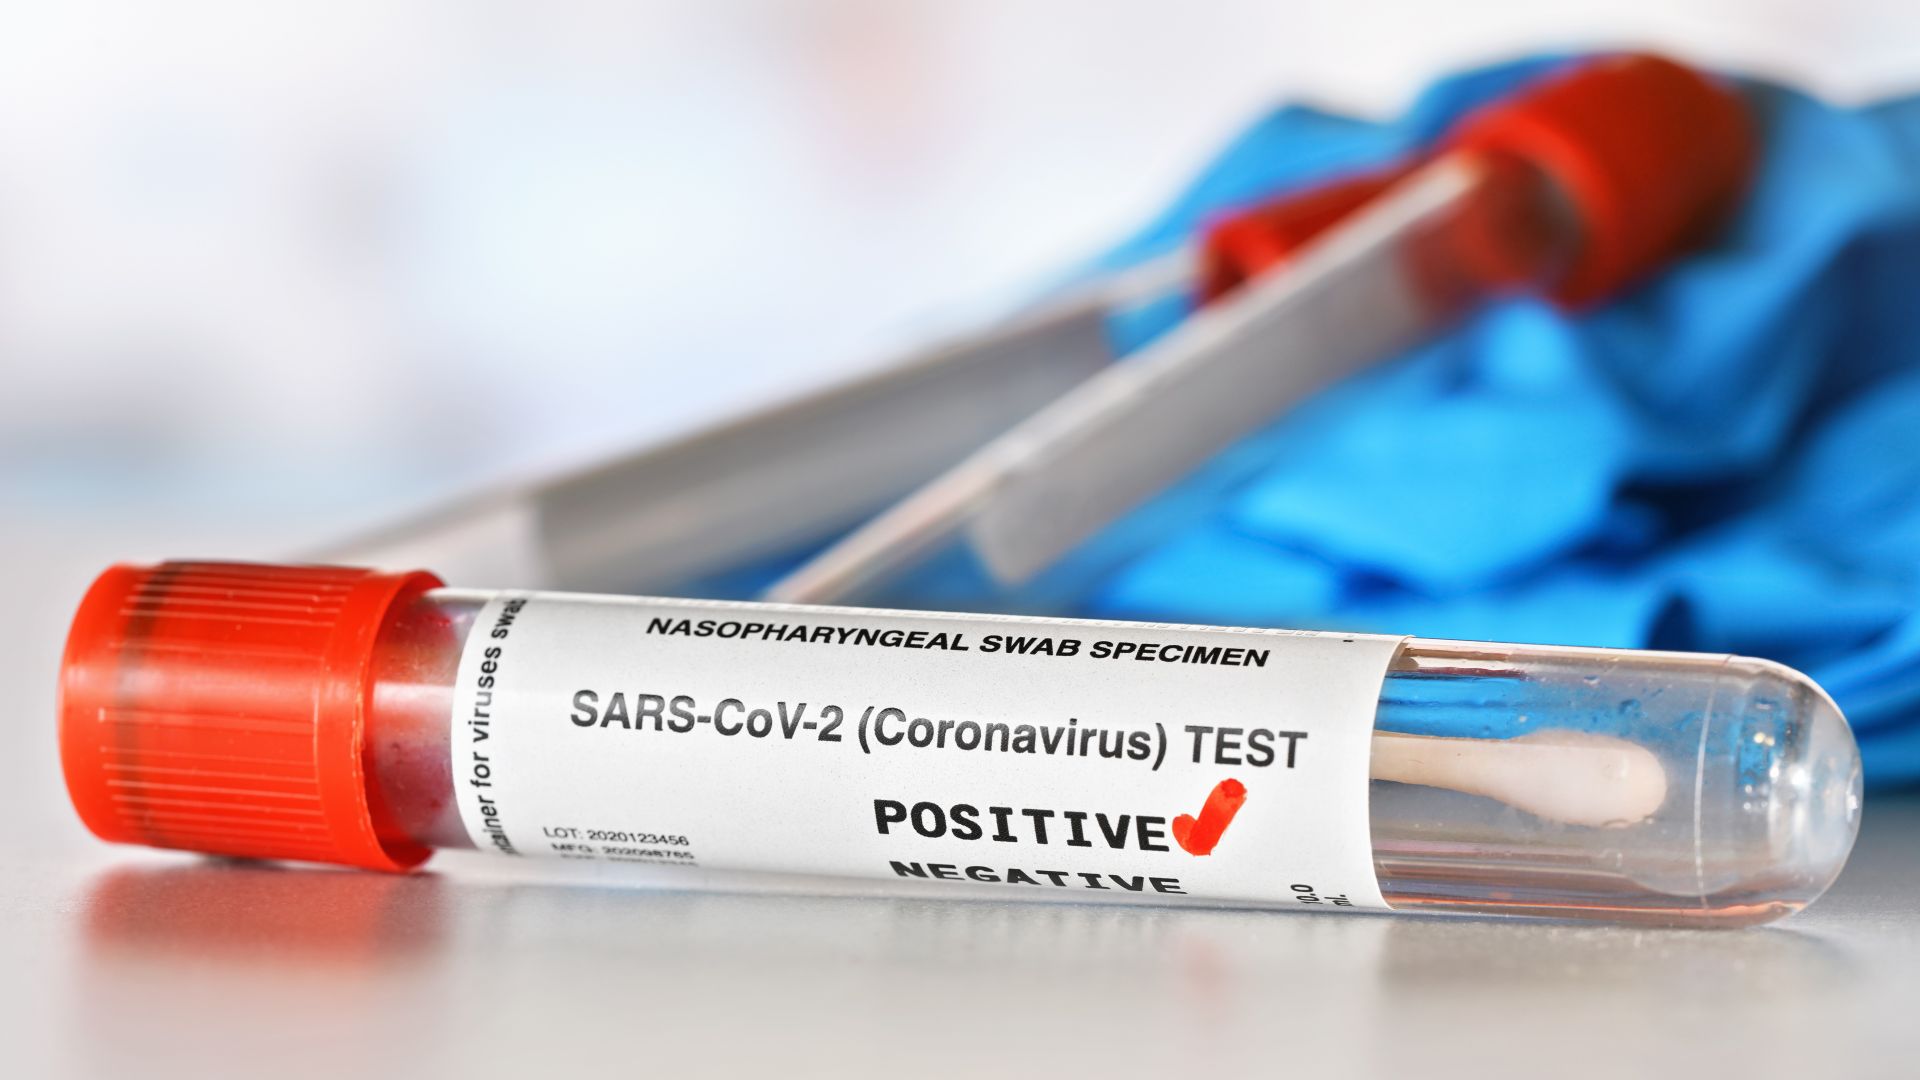 Държавата платила 16 лв. за PCR тест през април 2020 г., в лабораториите - до 130 лв.